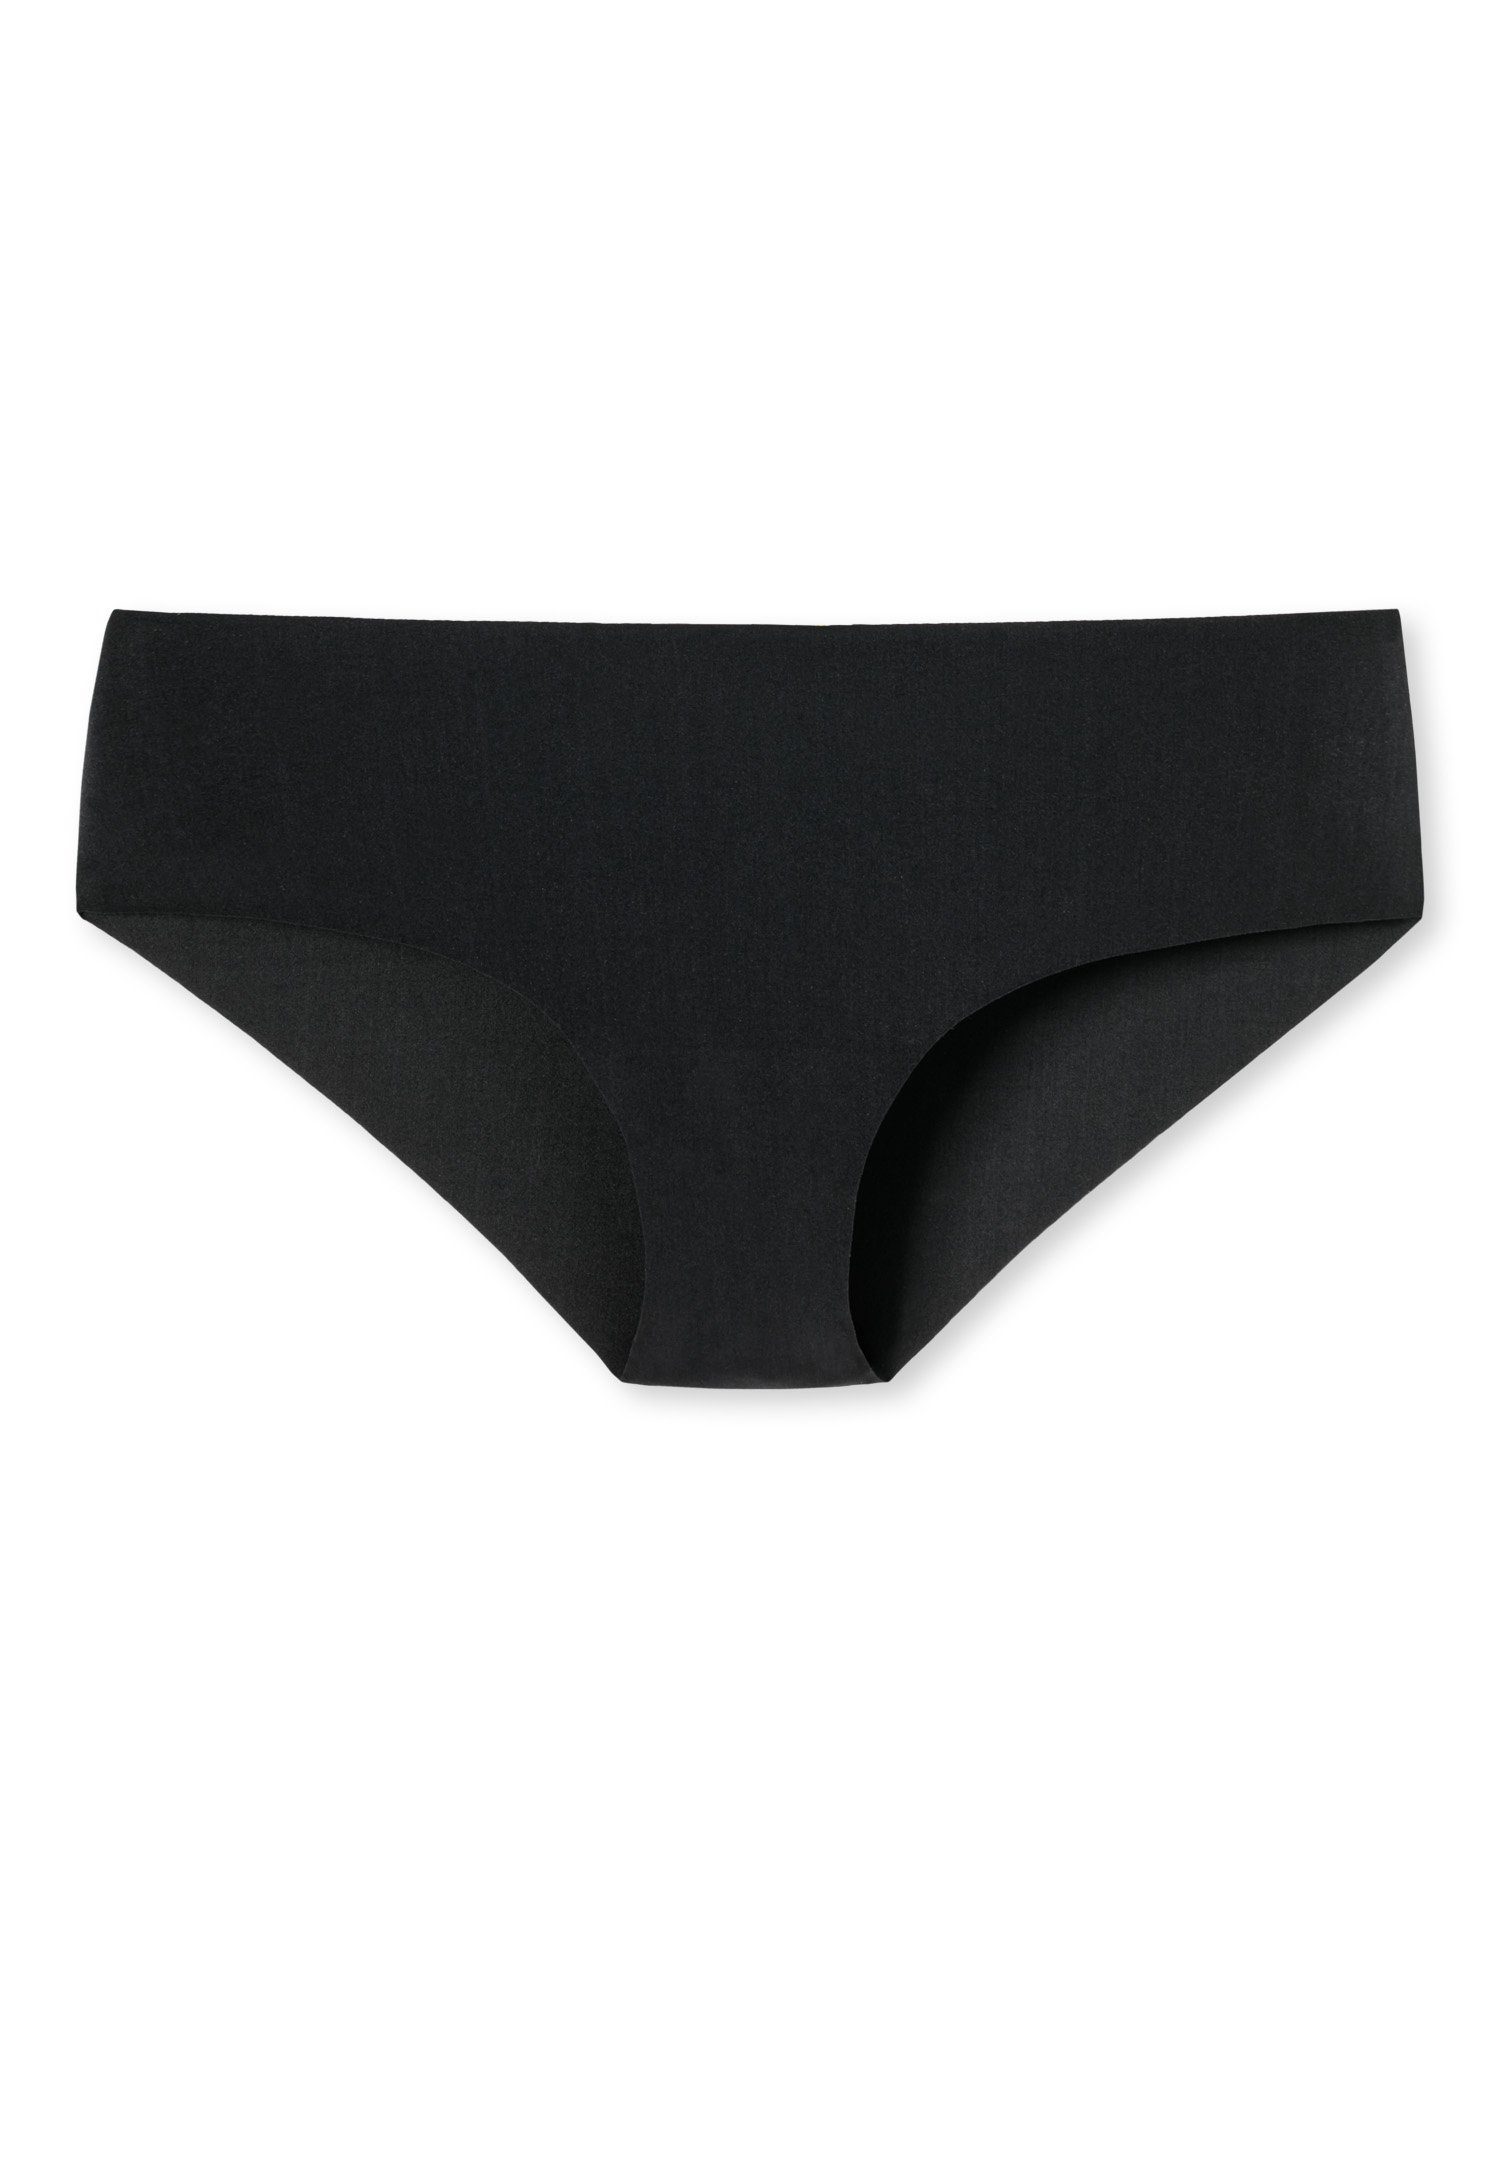 Schiesser Slip störende ohne 1-St., Set) Damen nahtlos Unterhose (Set, schwarz Seamless Panty/Shorts/Pants Nähte